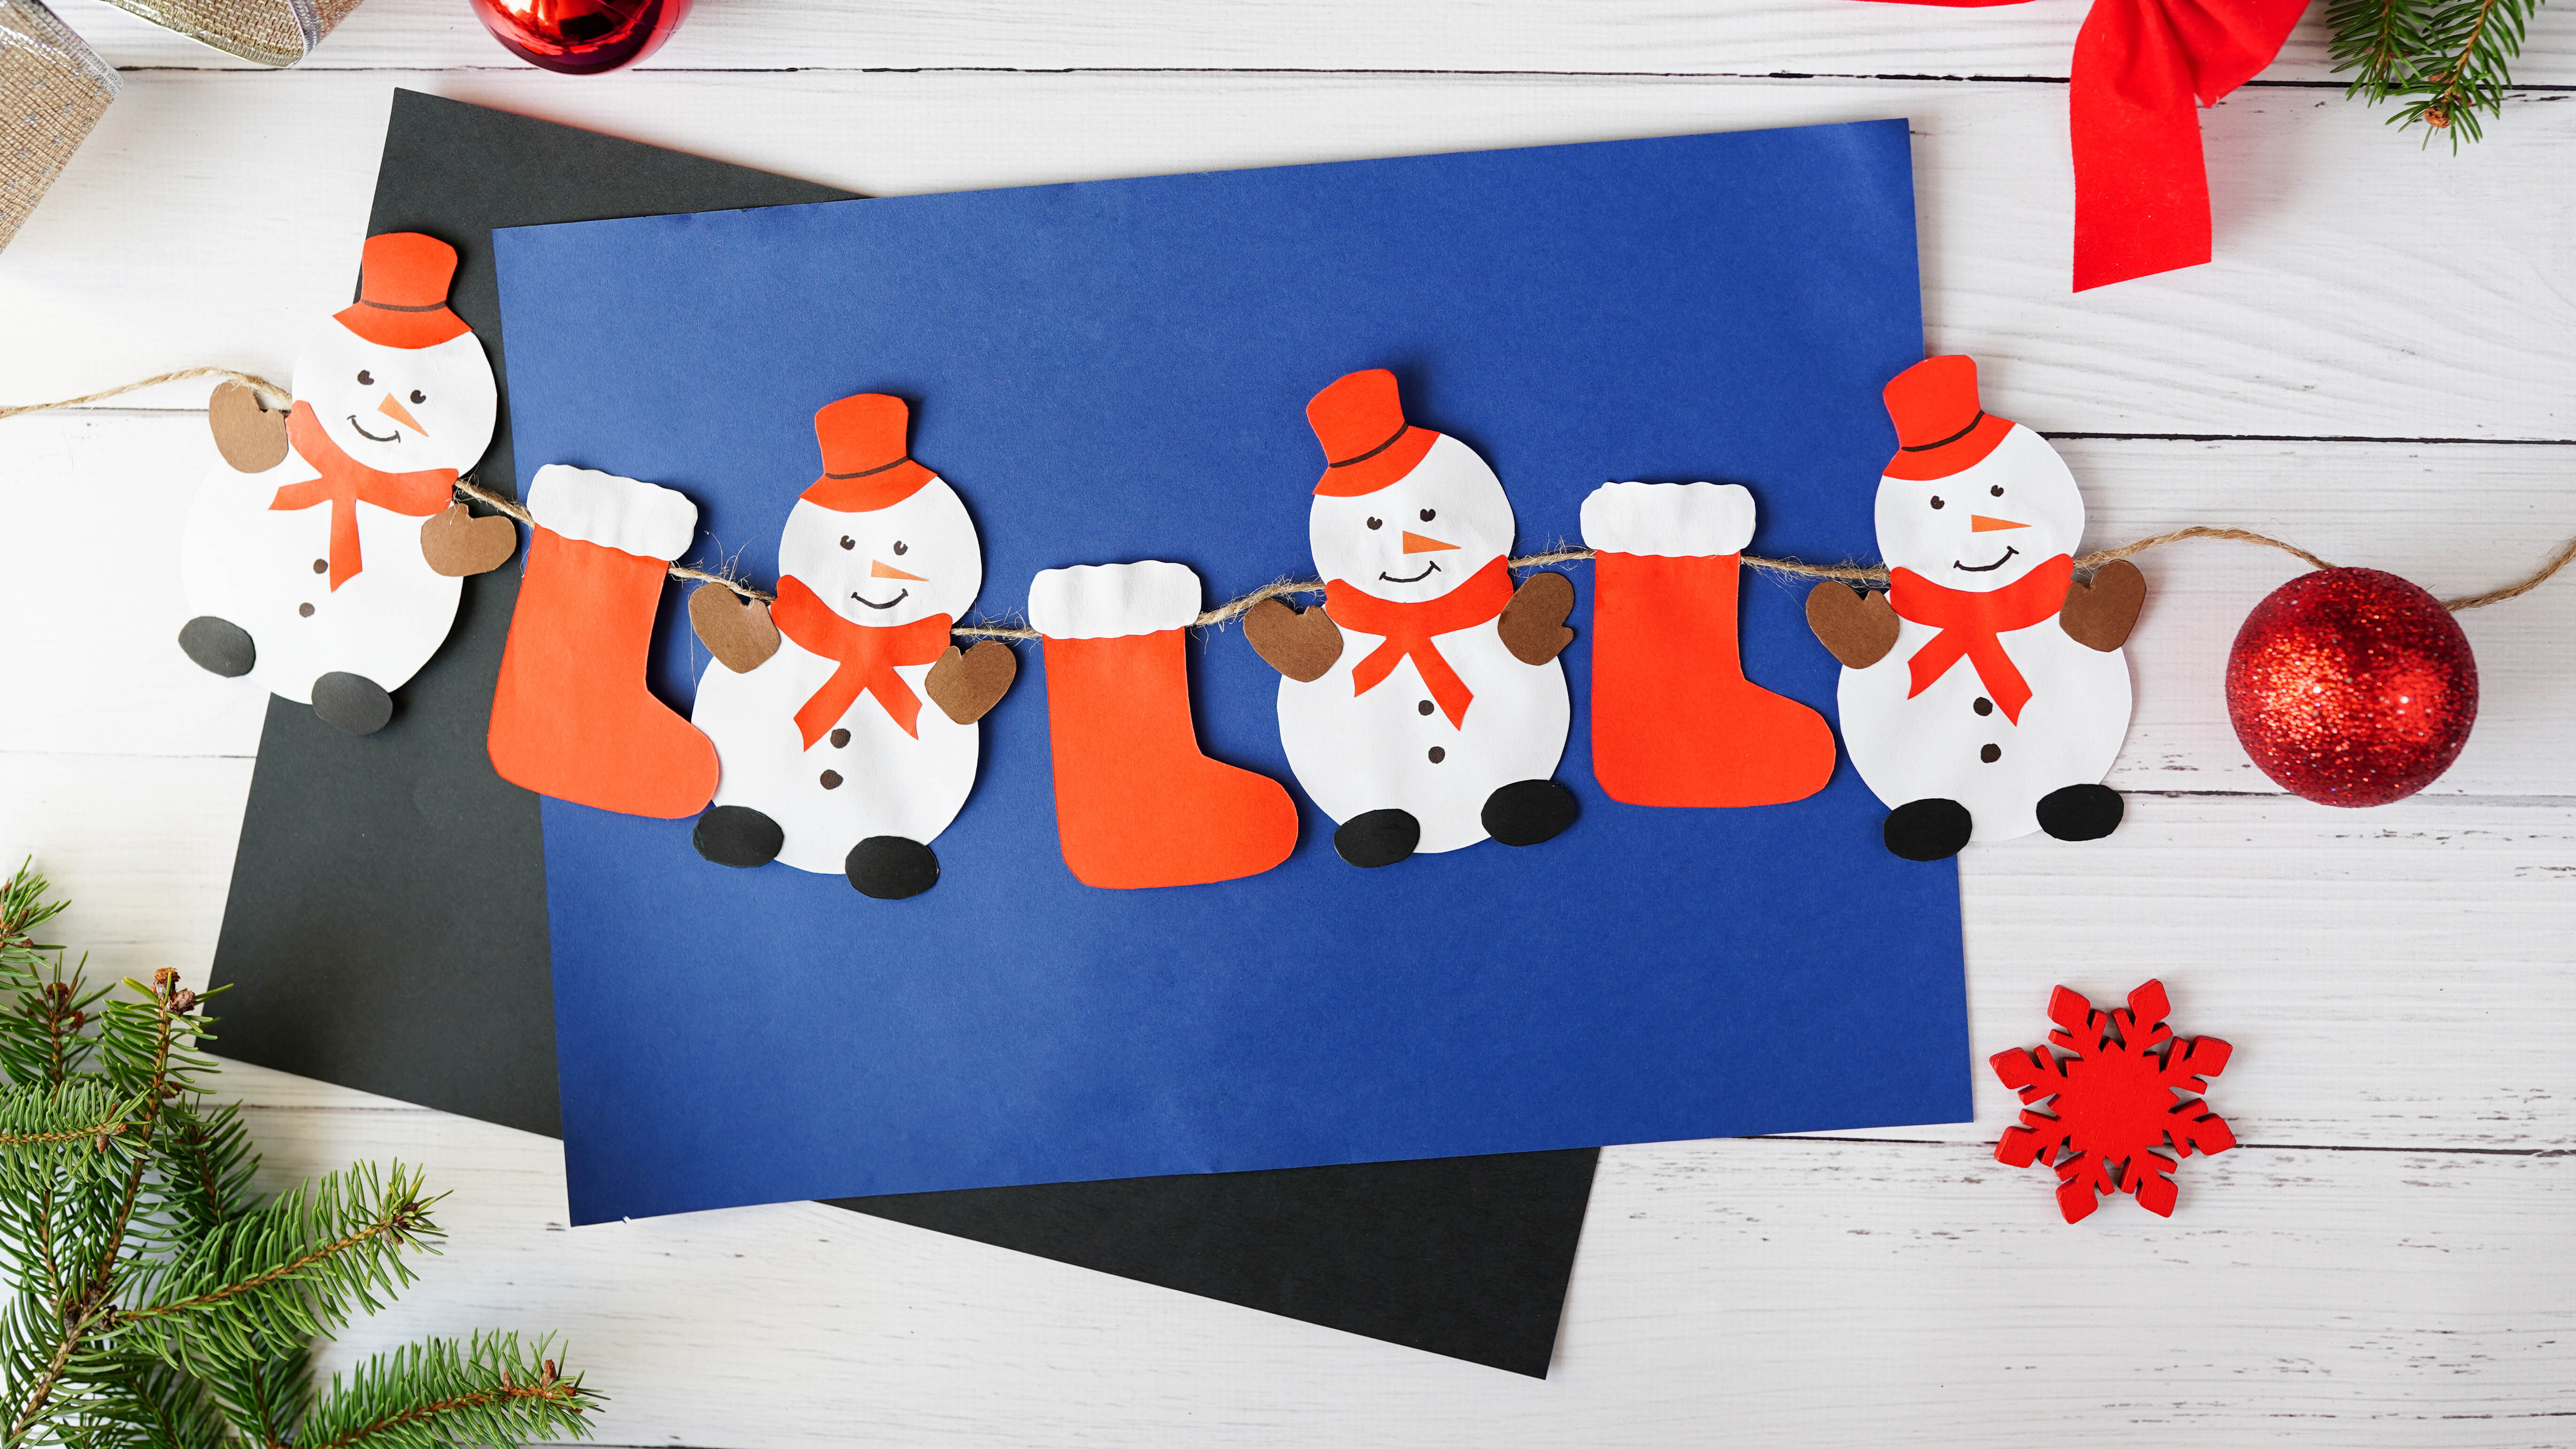 бумажная гирлянда из красных чулок и снеговиков на фоне синего конверта